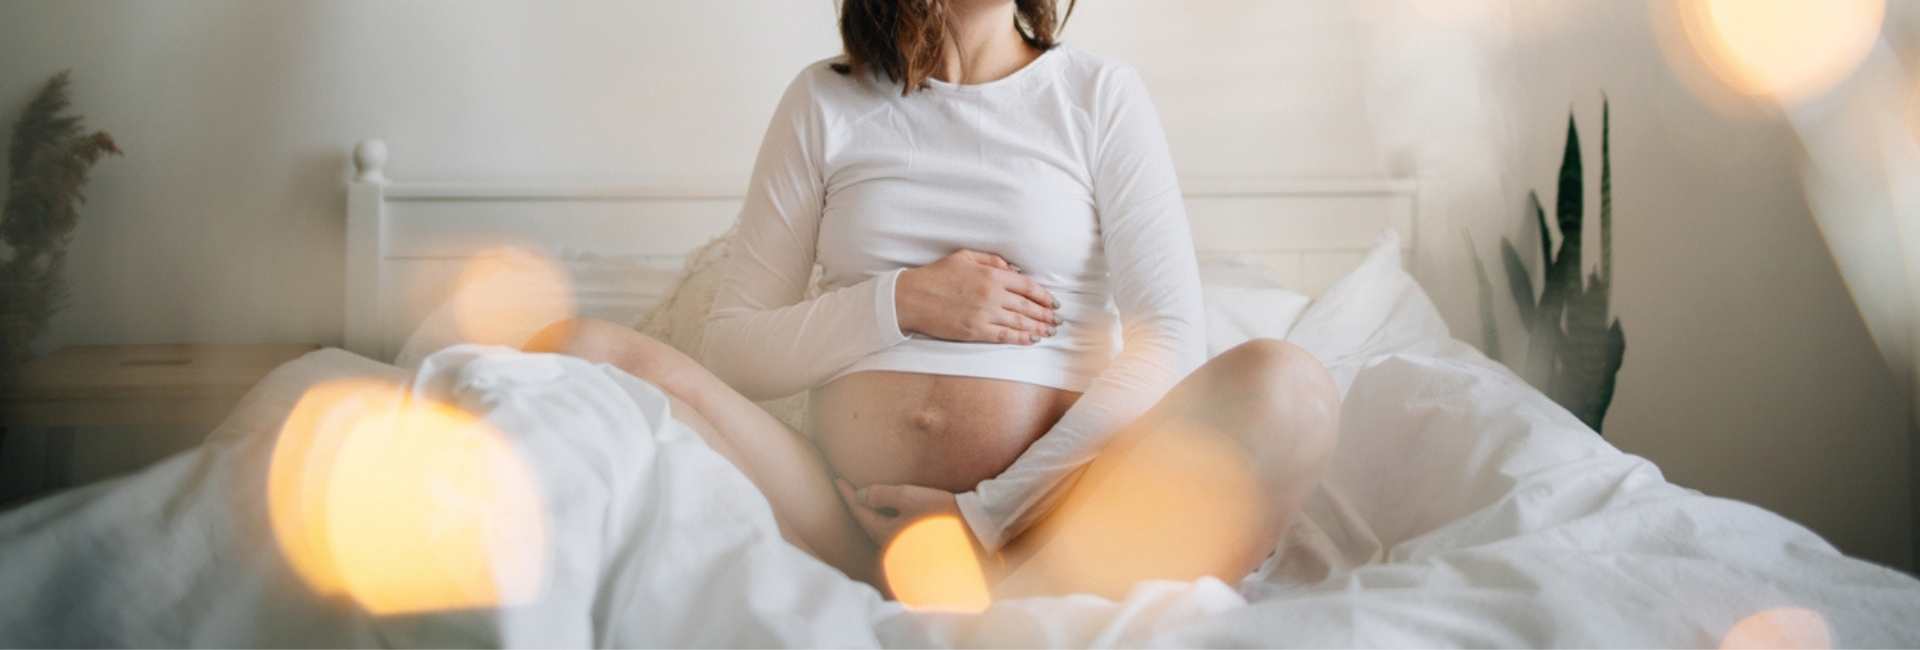 Grossesse : comment se passe la séance photo avec une femme enceinte ?